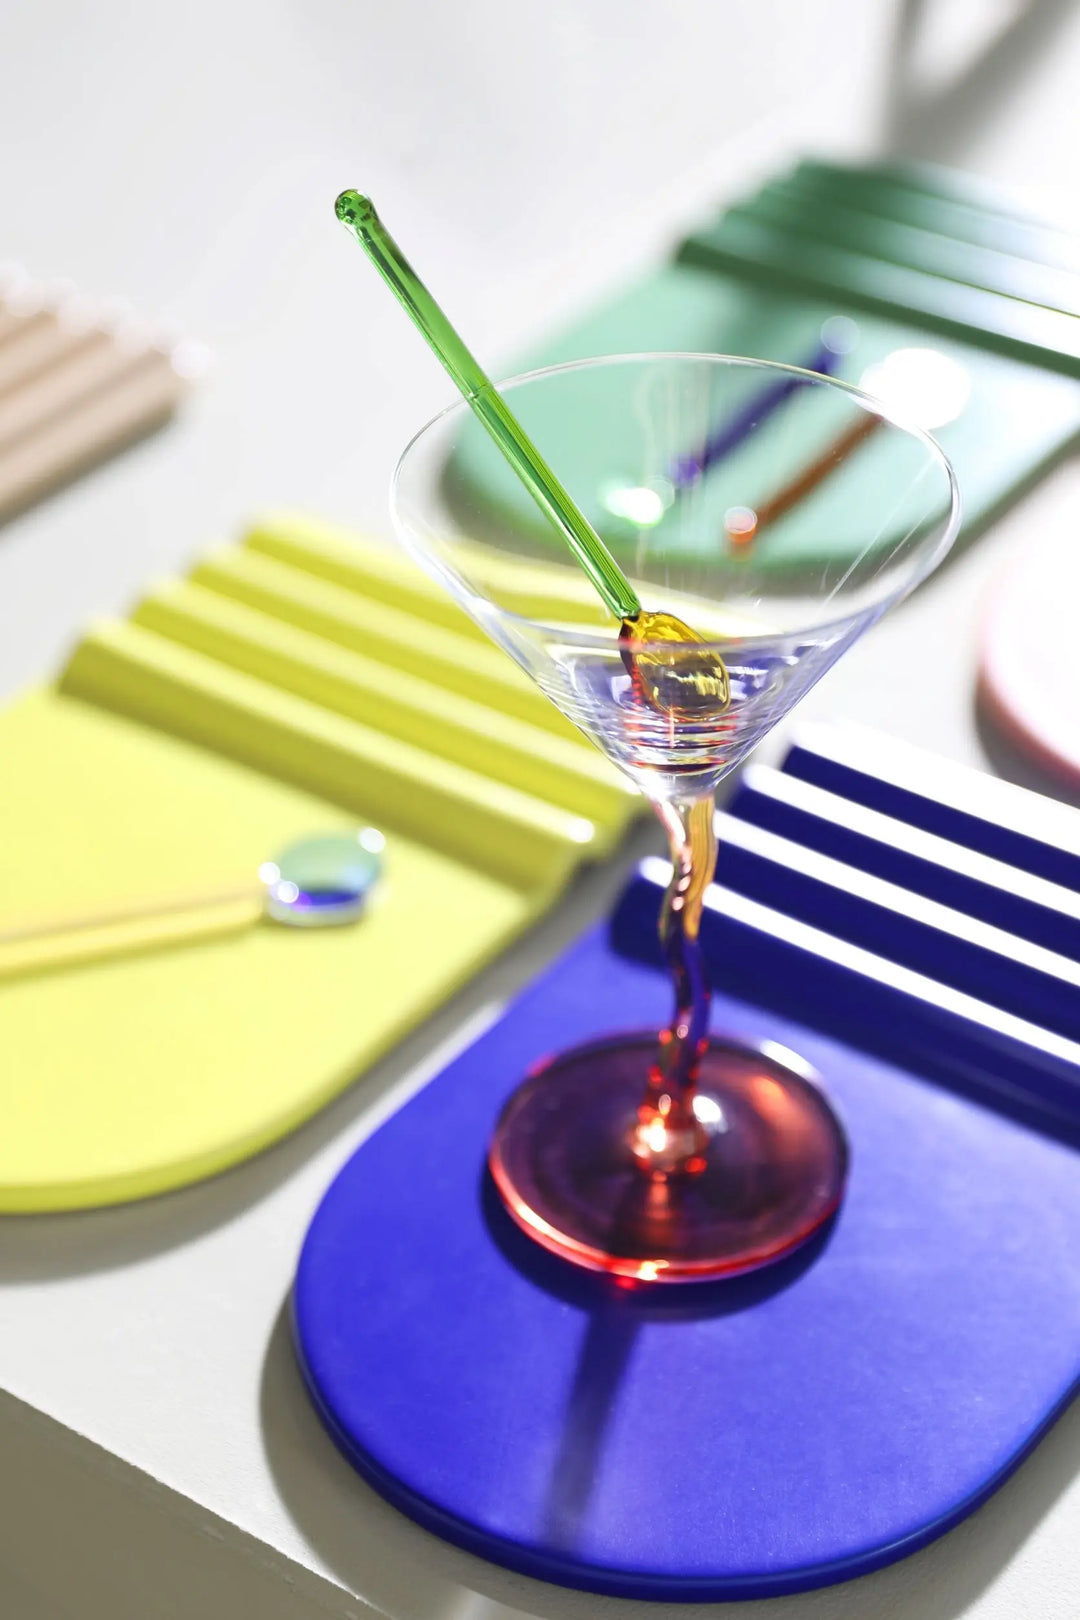 Spoon pin sæt i glas i 4 forskellige farver &klevering